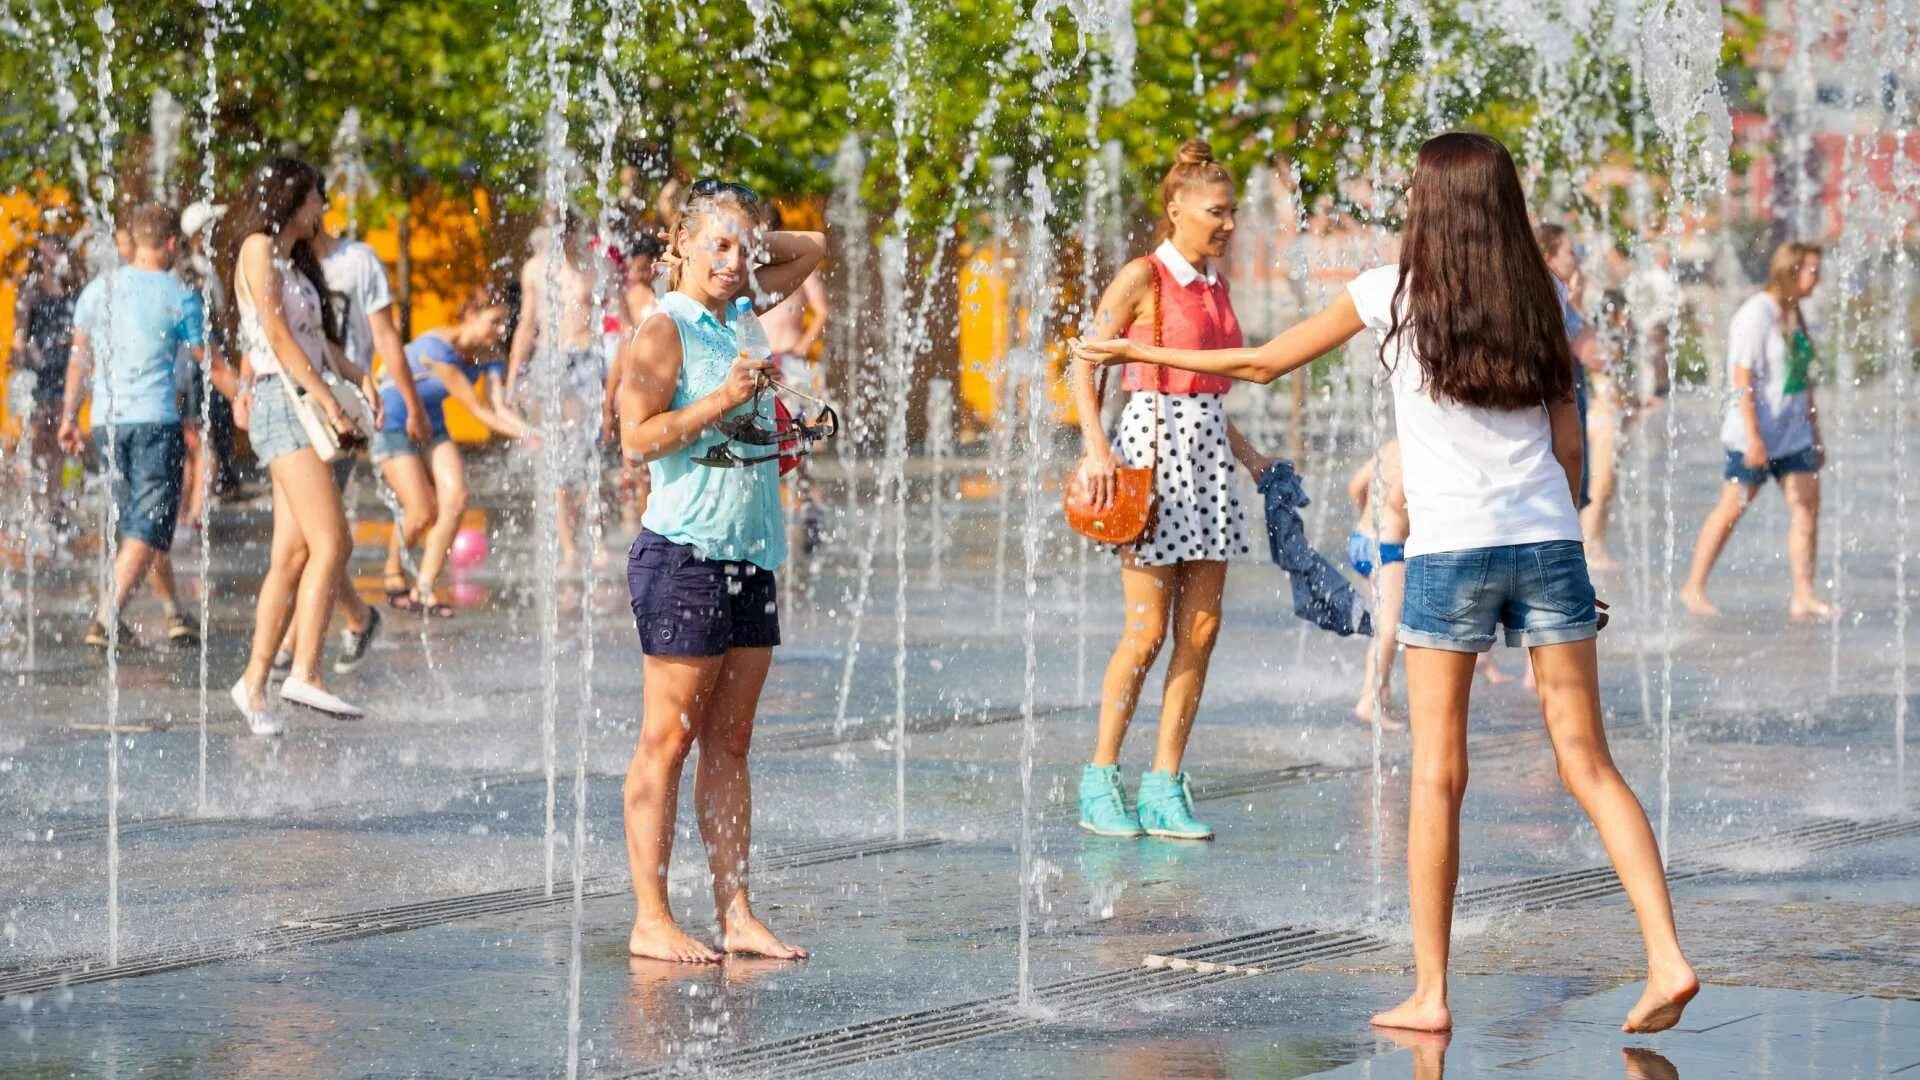 Сильная жара в городе. Жаркое лето в Москве. Знойное лето в городе. Босиком у фонтана. Люди в Сухом фонтане.